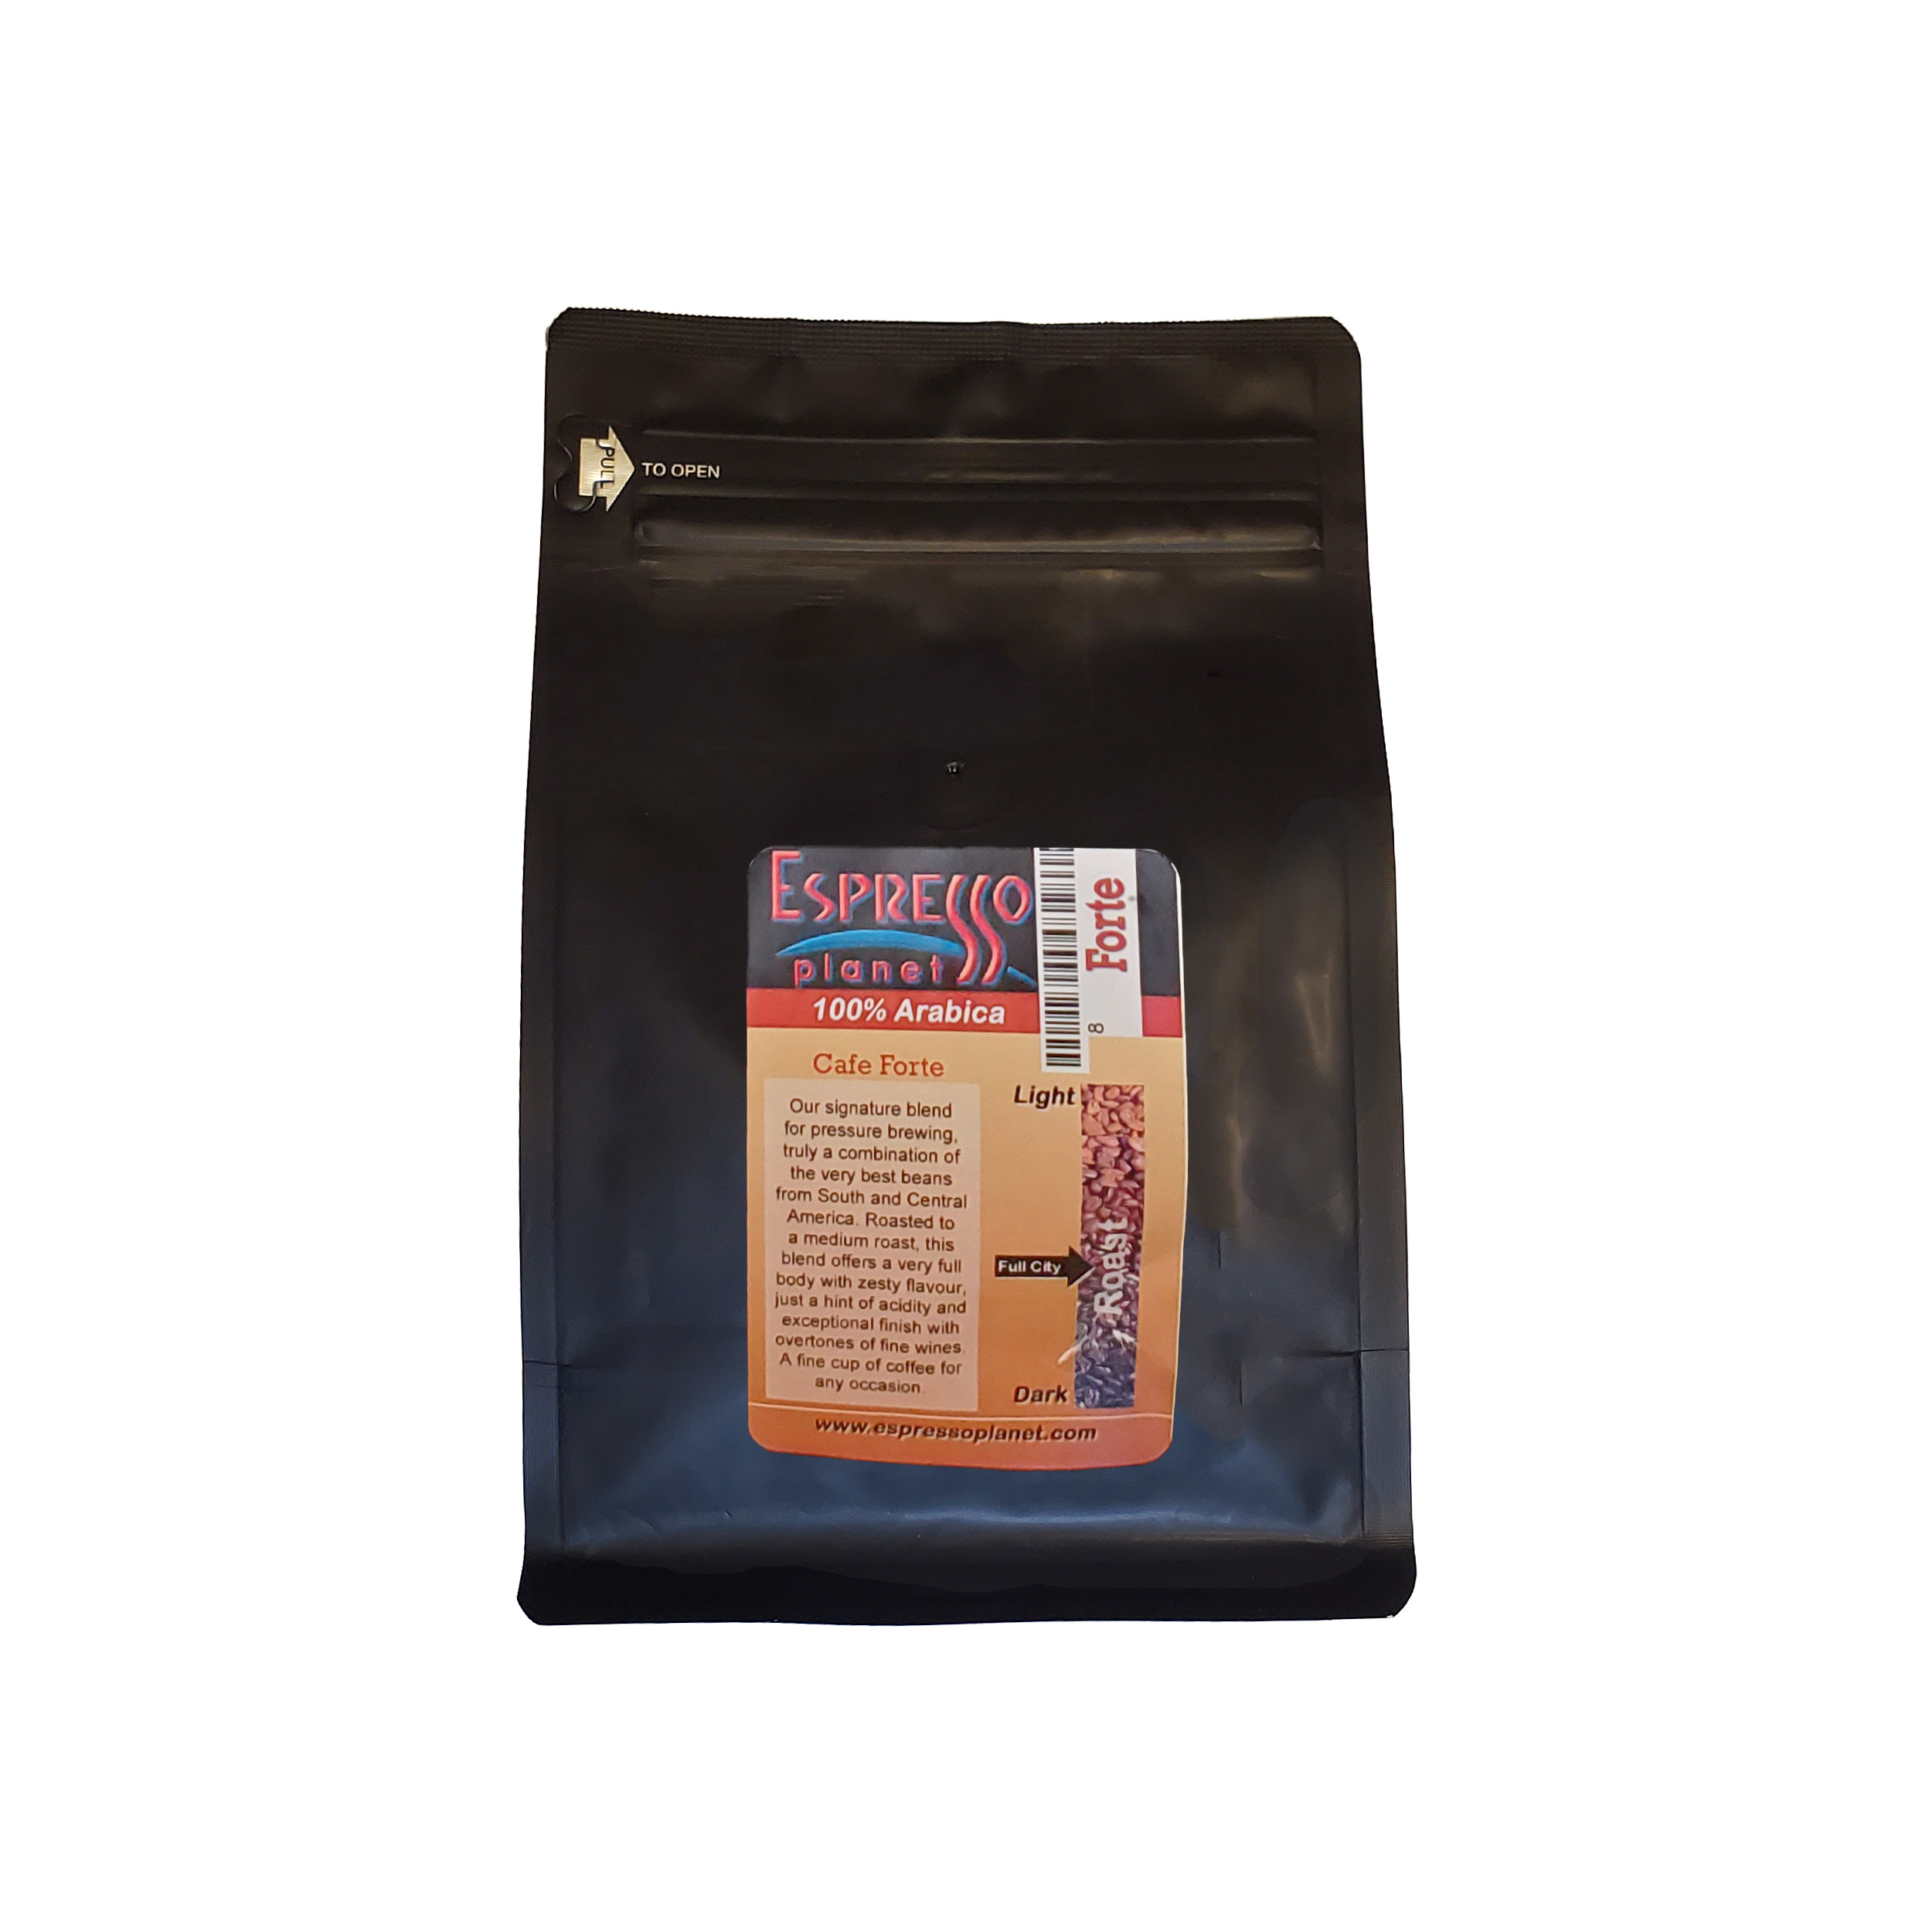 Espresso Planet Blend - Cafe Forte Beans 8 oz Bag